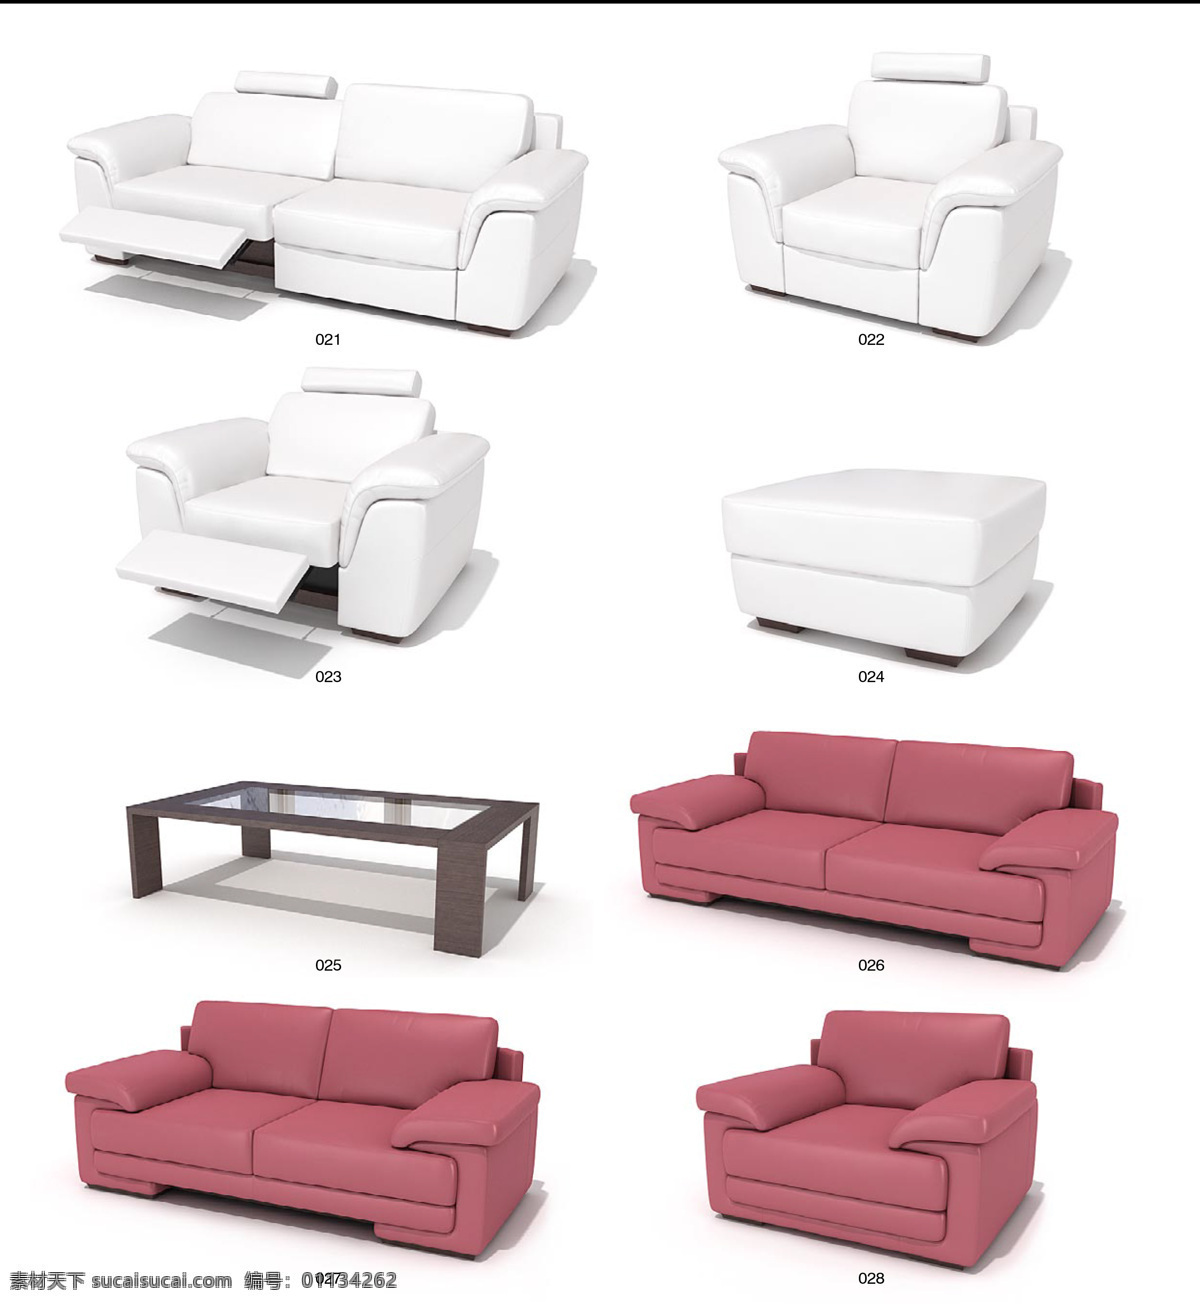 精美 沙发椅子 茶几 max 模型 带 材质 贴图 沙发 3d家具模型 3d模型素材 3d设计模型 创意沙发 家具模型 3d 精美家具模型 沙发椅子茶几 白色